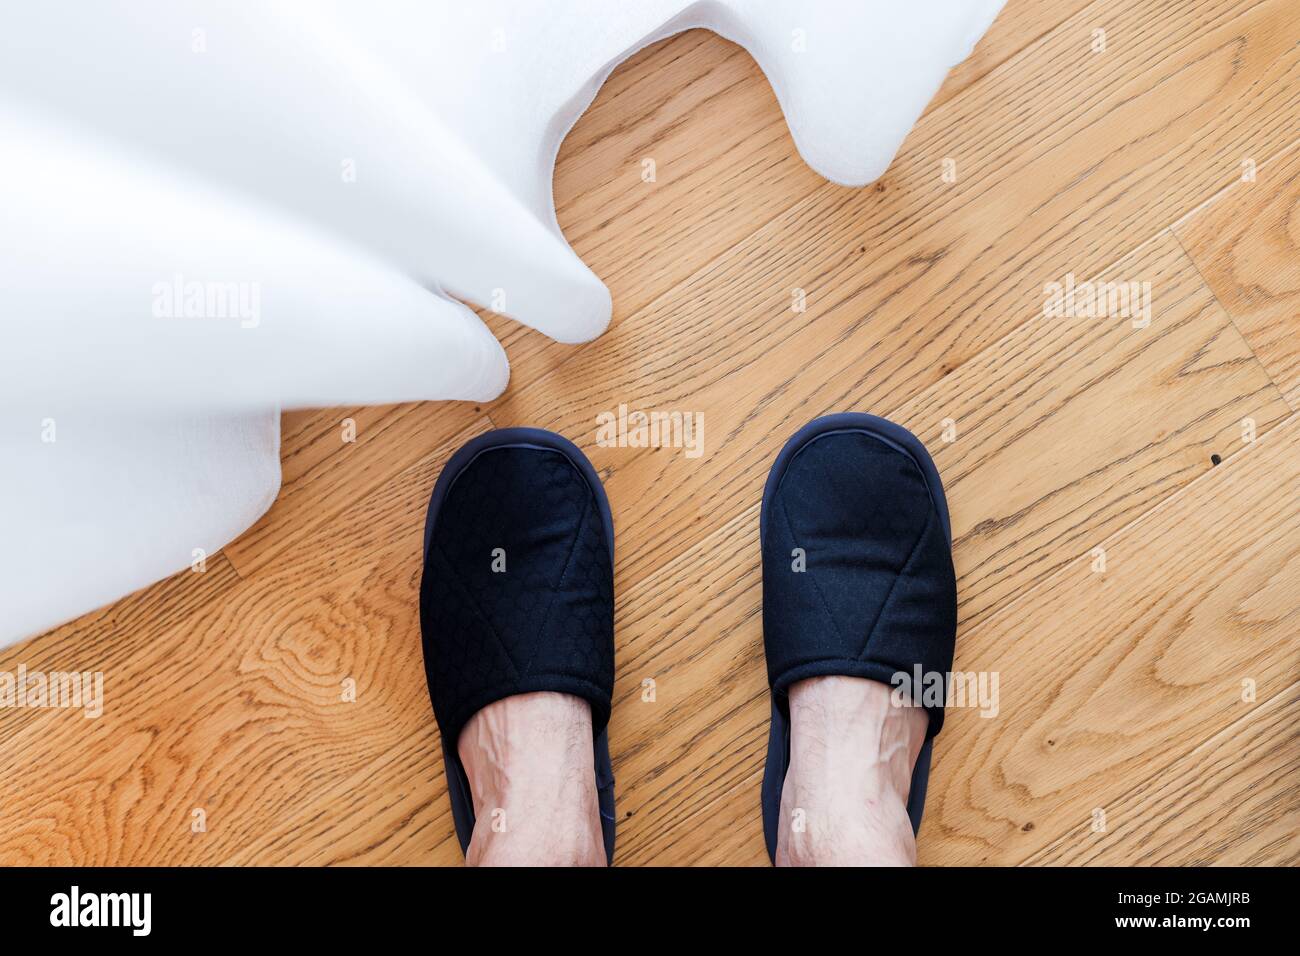 Concepto de limpieza de la casa. Primer plano de una mopa y pies femeninos  en las zapatillas de la casa. Espacio para texto Fotografía de stock - Alamy